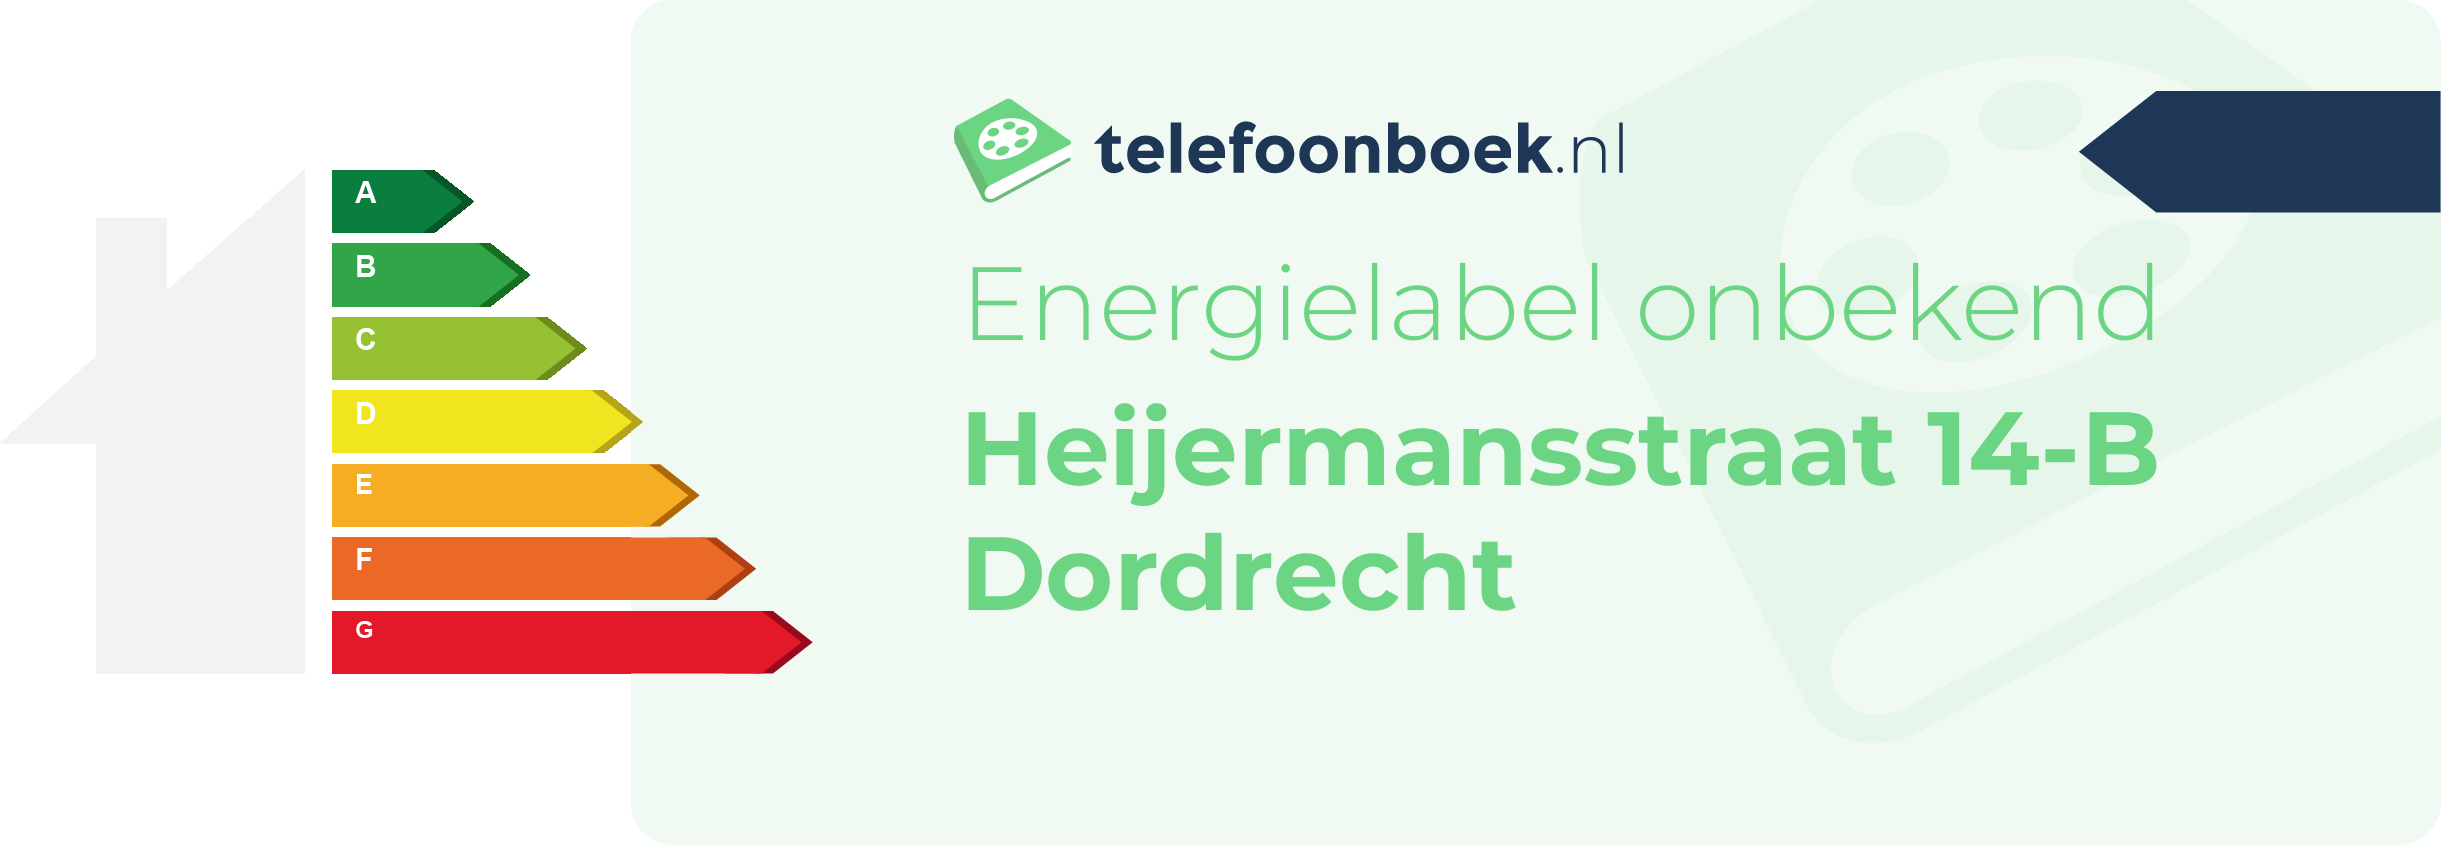 Energielabel Heijermansstraat 14-B Dordrecht